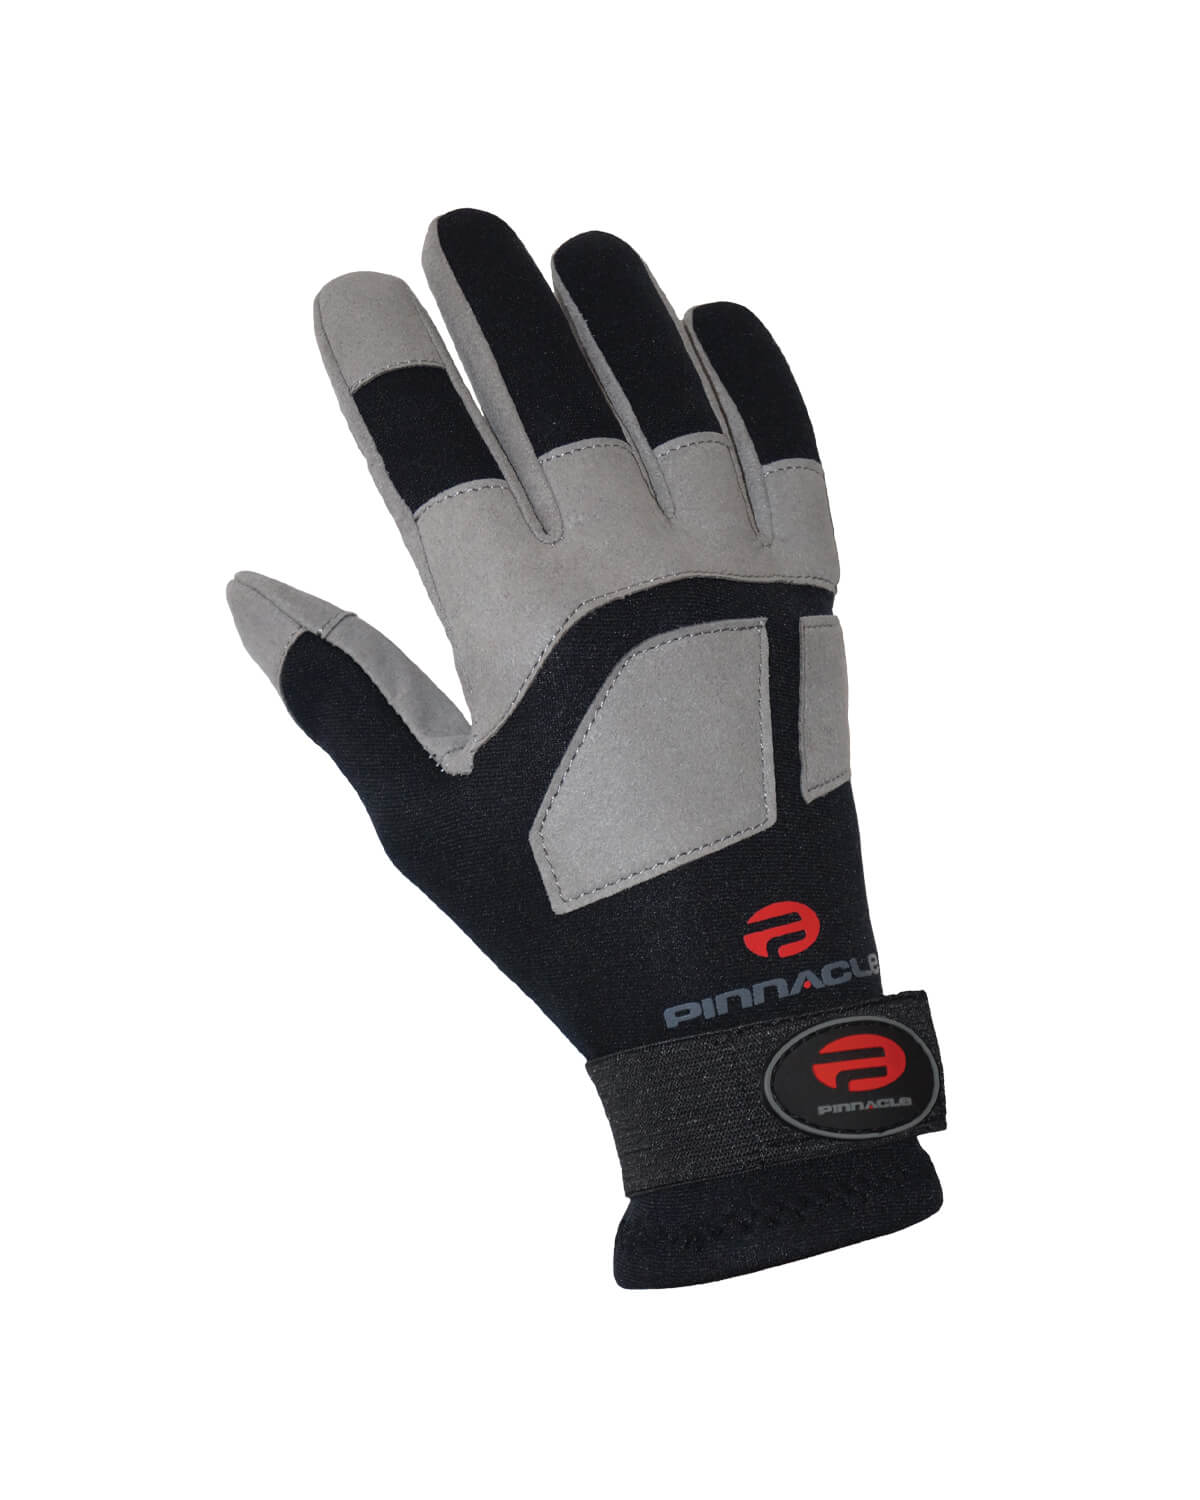 2mm Pinnacle AMARA Gloves